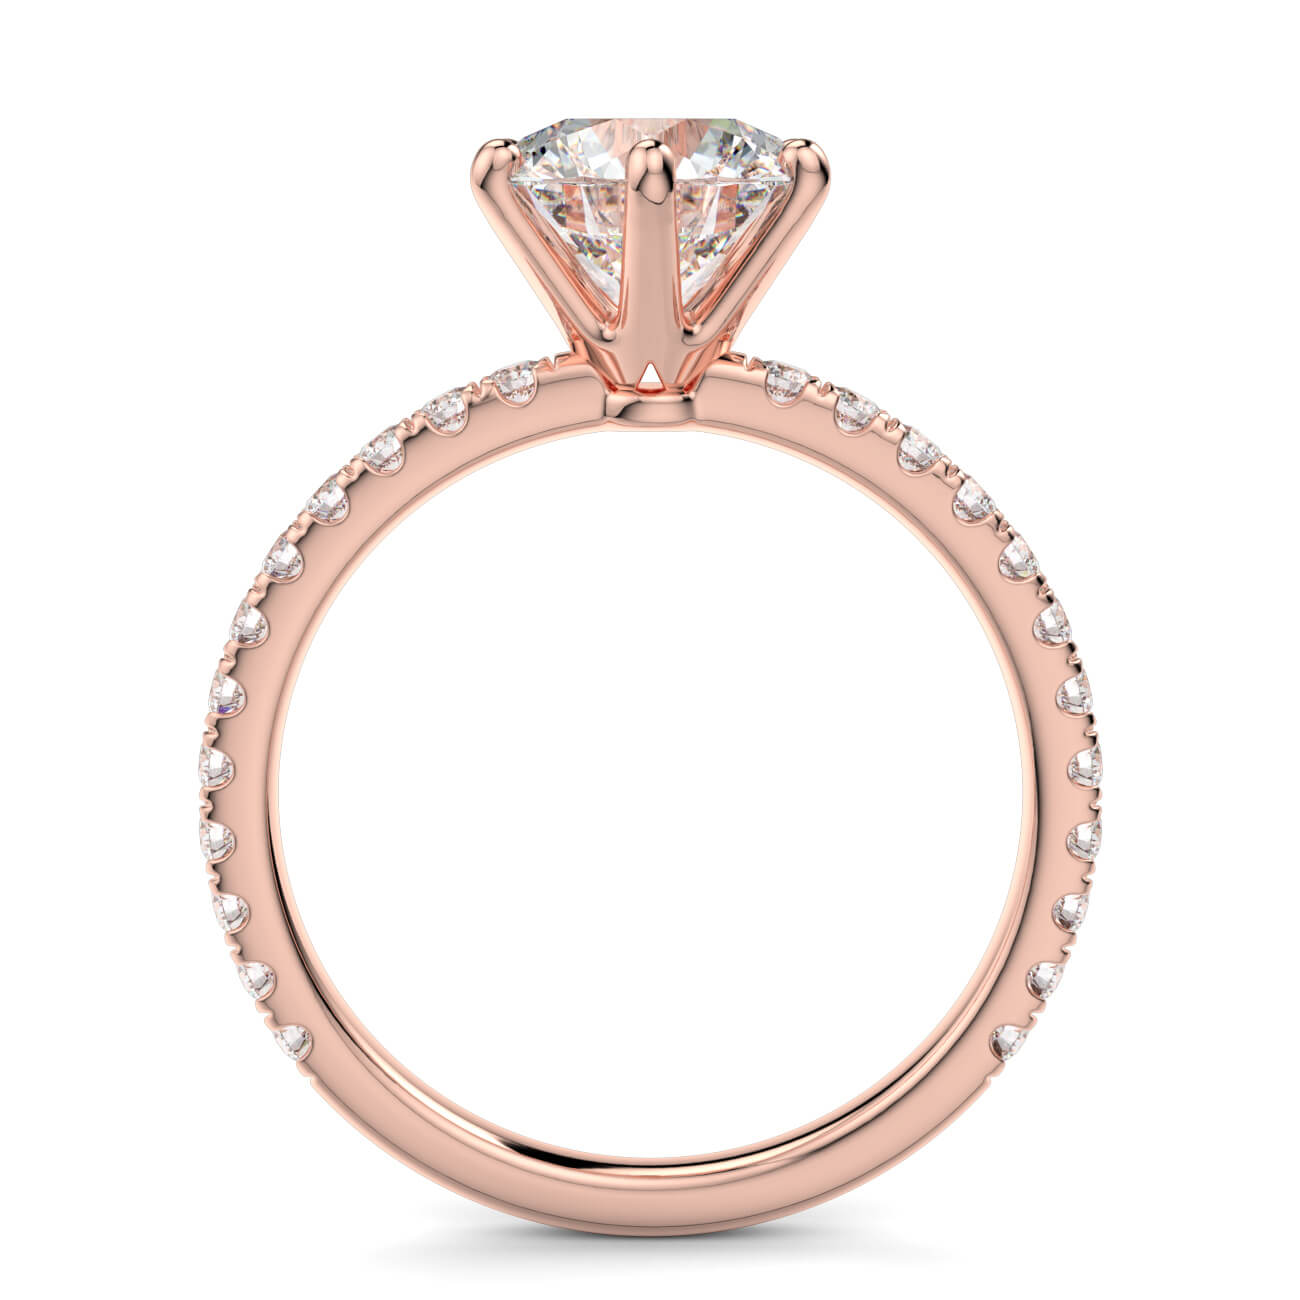 Delicate ‘Liat’ Diamond Engagement Ring in 18k Rose Gold – Australian Diamond Network